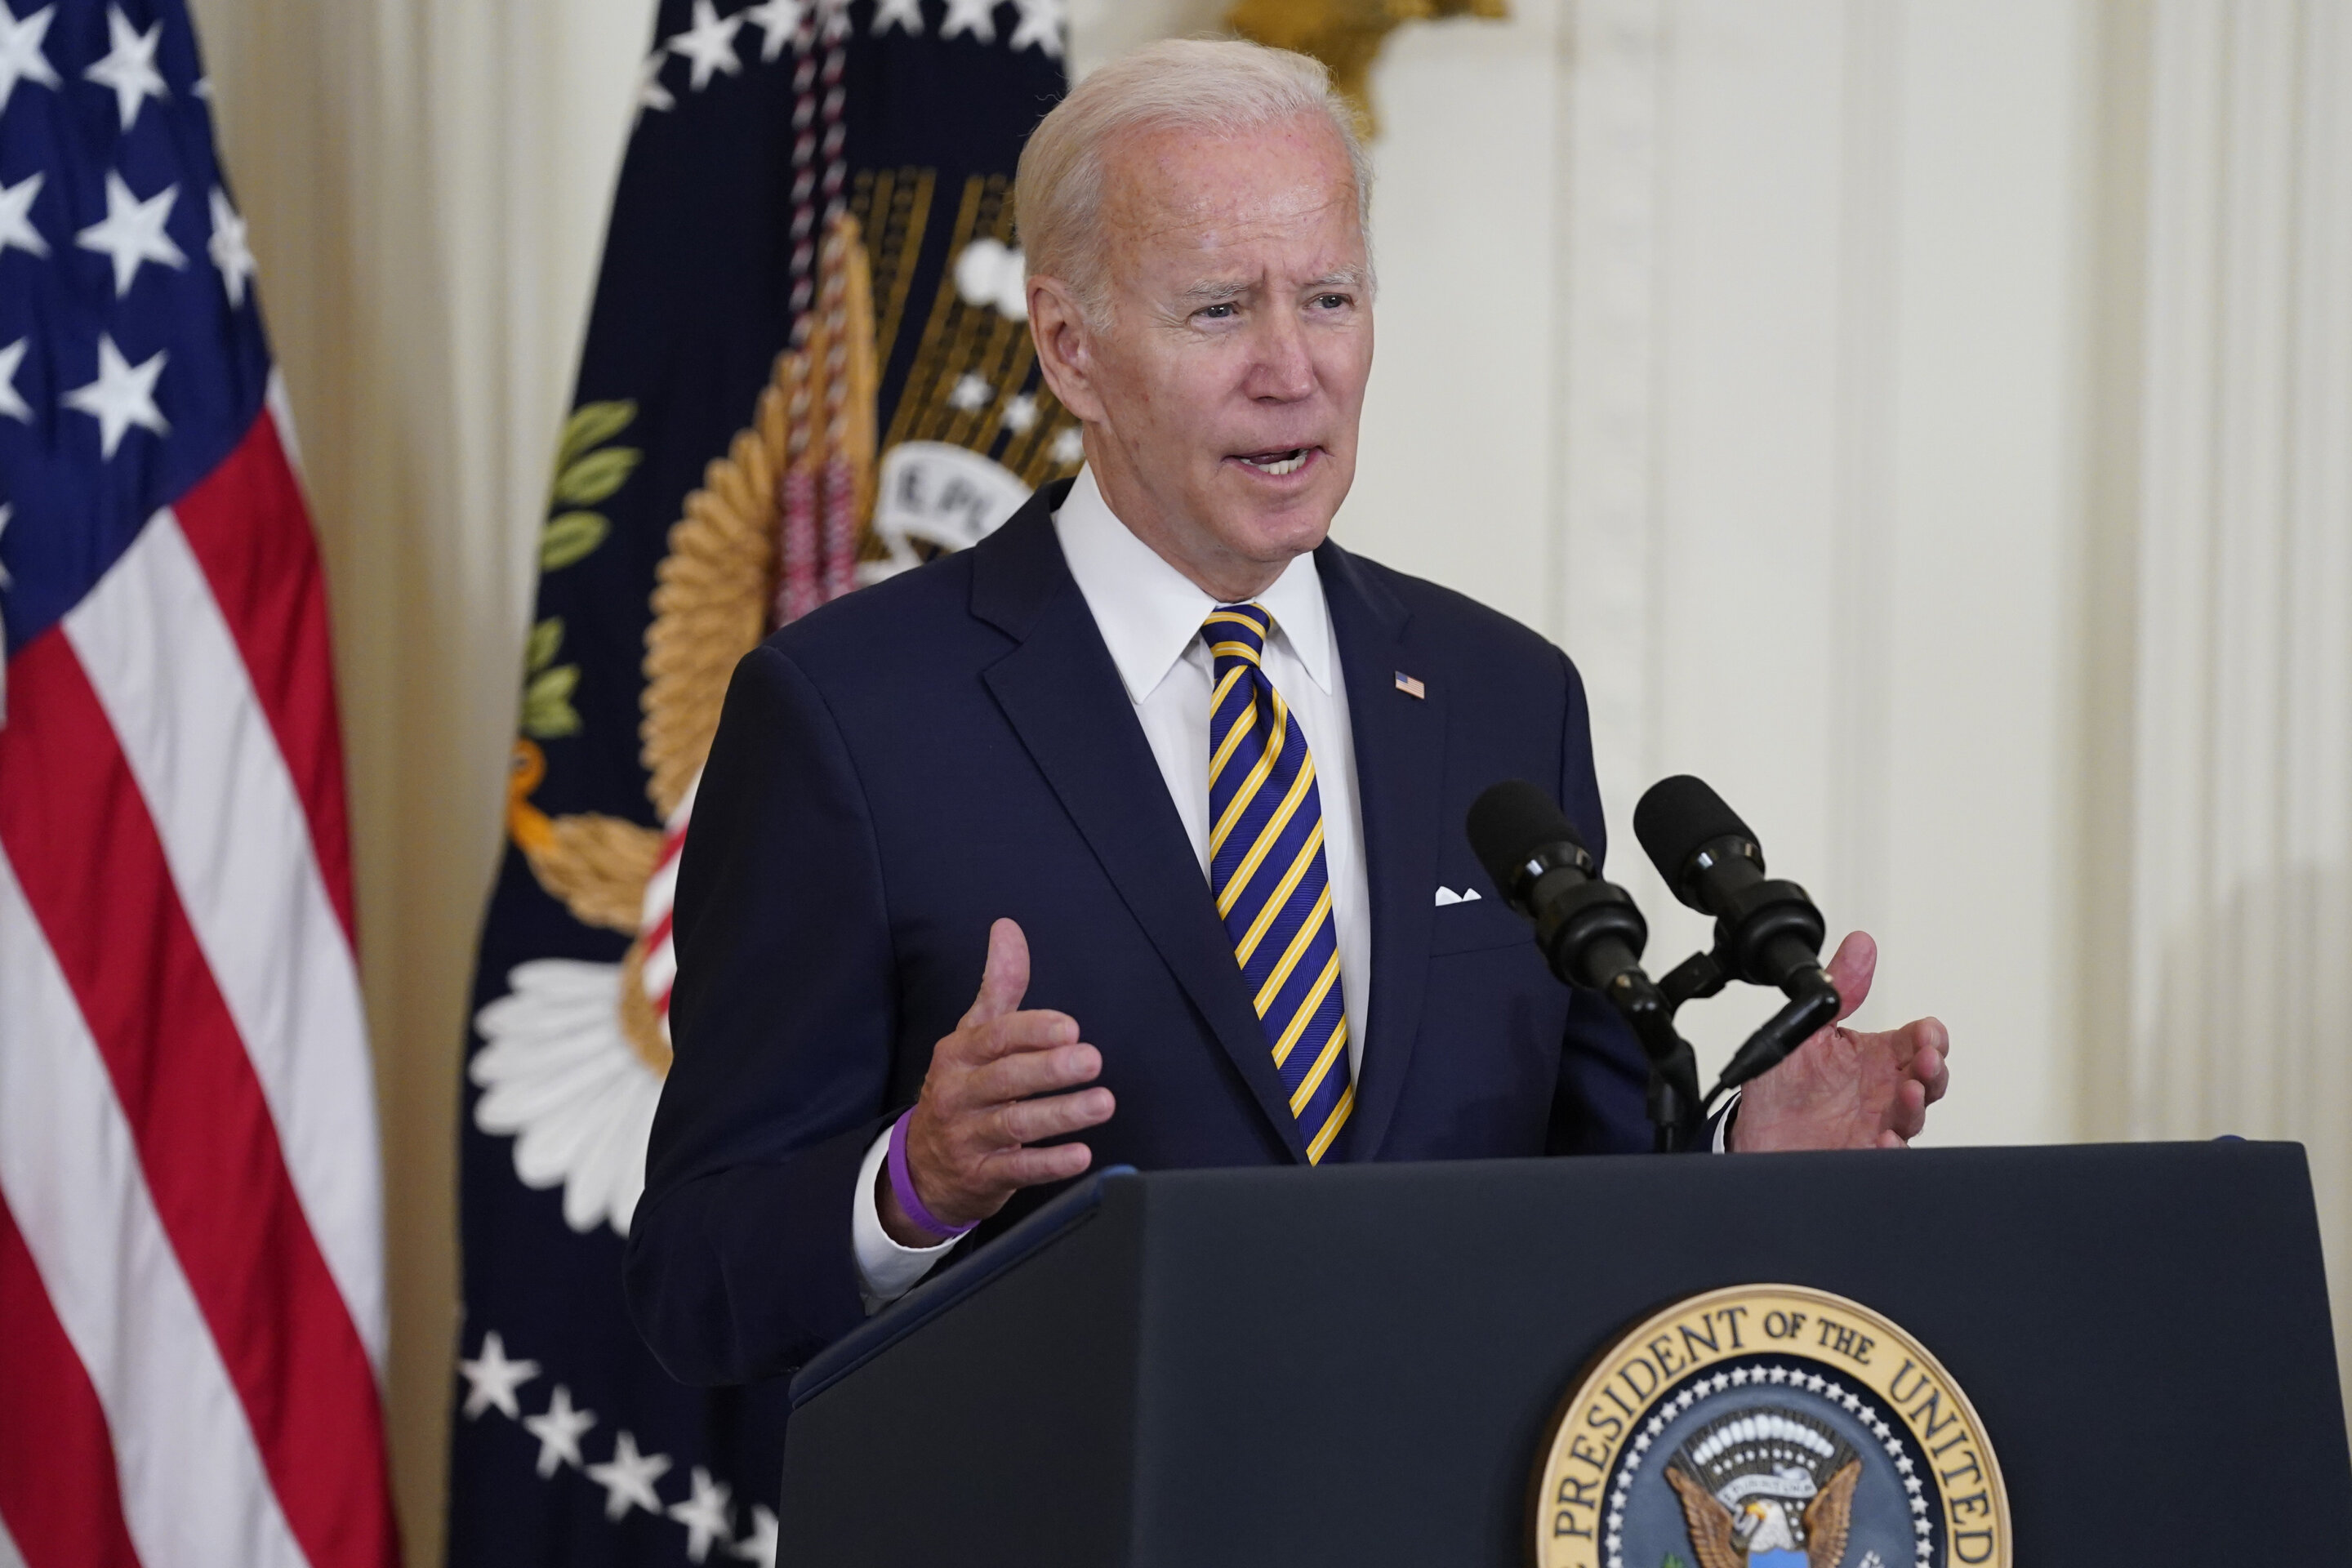 #Biden to sign massive climate, health care legislation